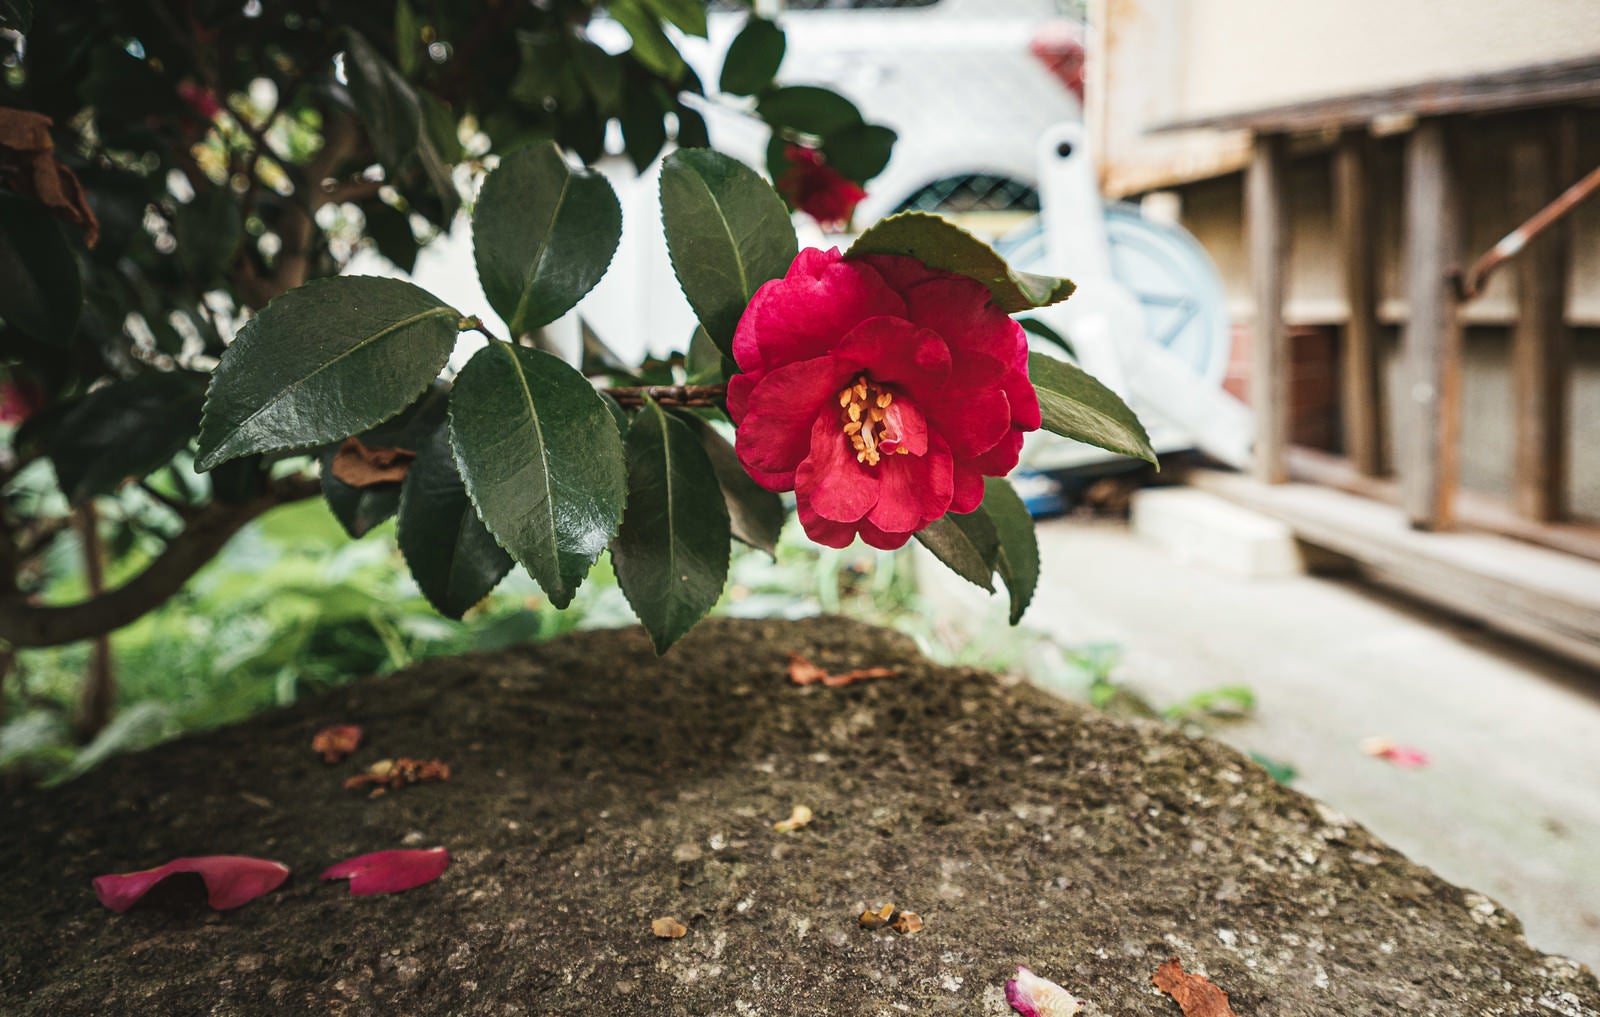 「空き家の庭に咲いた牡丹の花」の写真